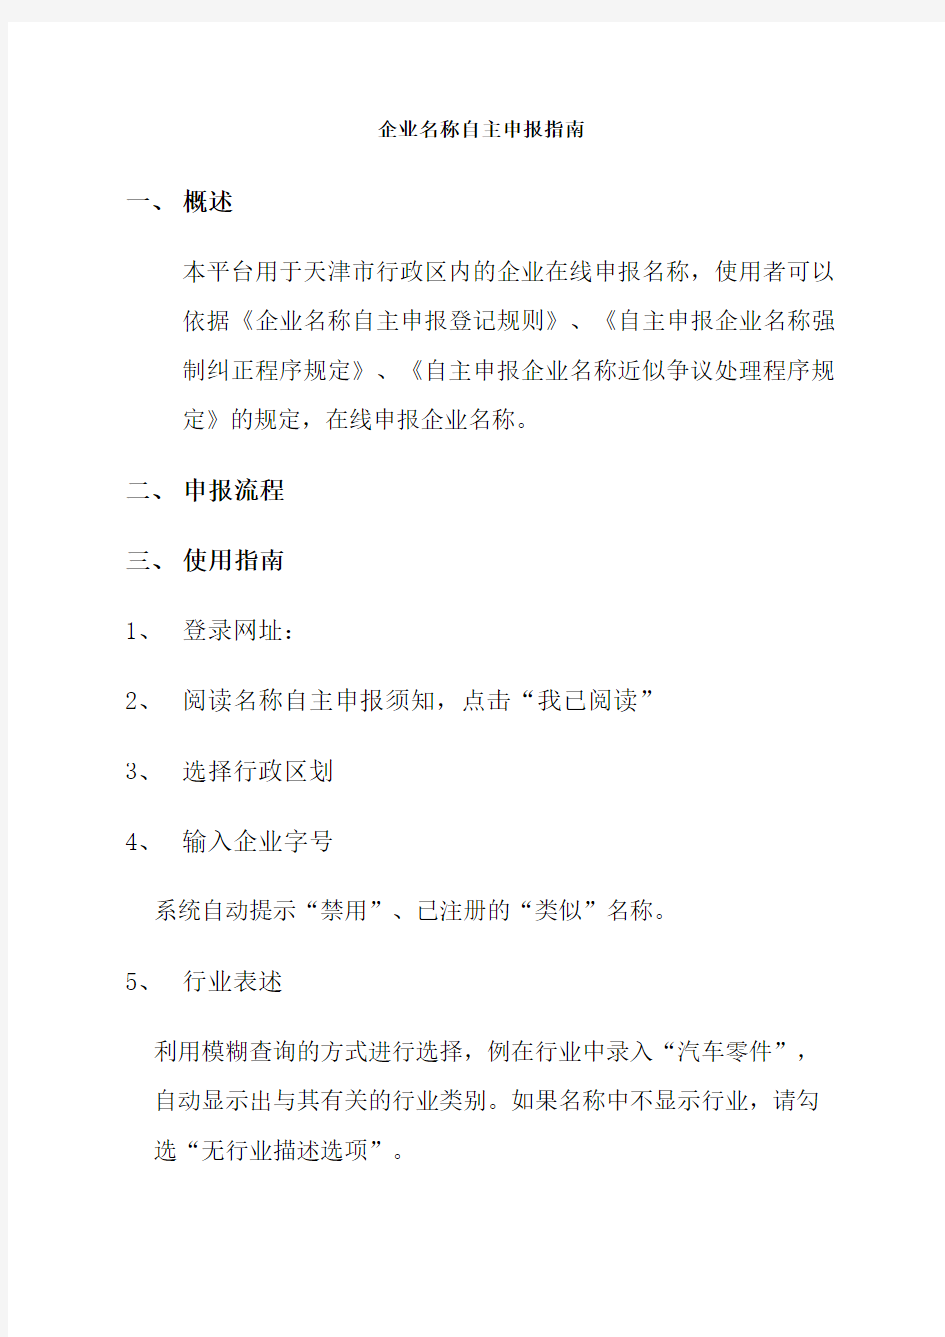 天津市企业名称自主申报平台操作指南